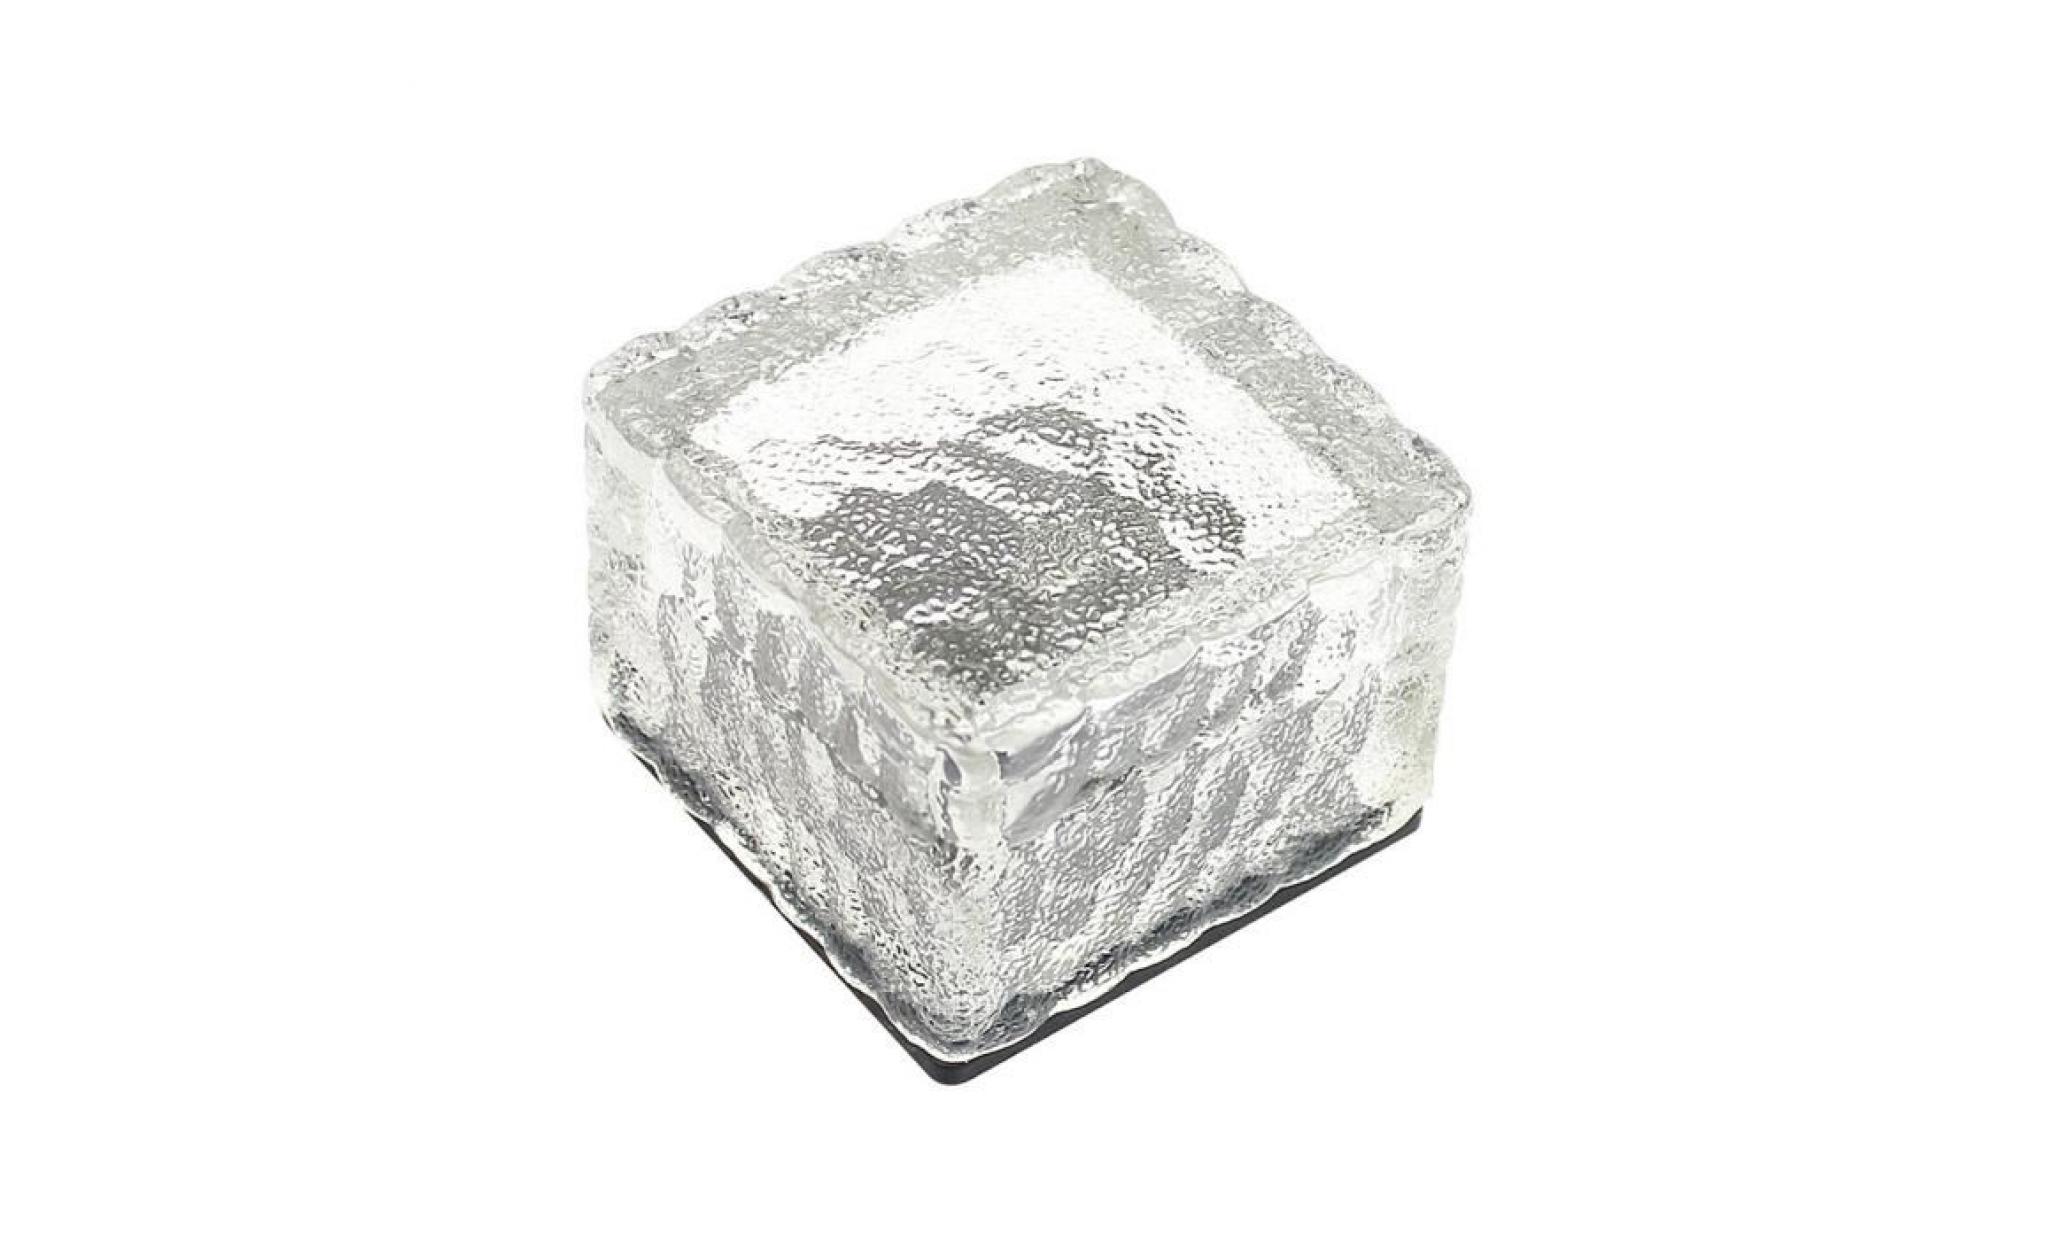 led énergie solaire change de couleur ice cube en cristal extérieur en verre brique hot lights anonywego882 pas cher